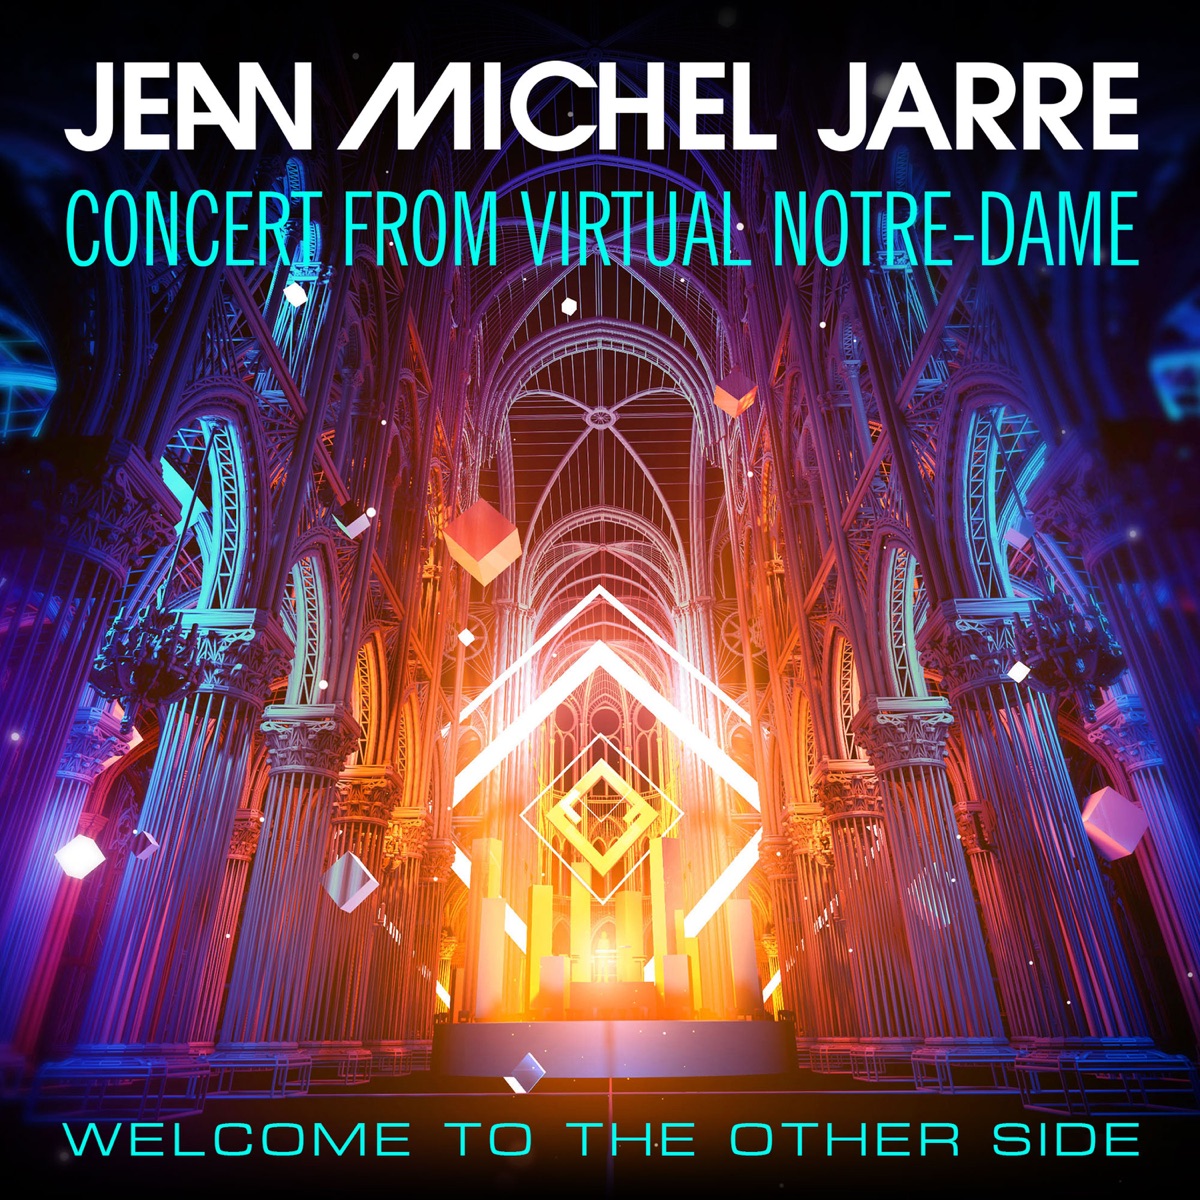 Electronica 2: The Heart of Noise par Jean-Michel Jarre sur Apple Music